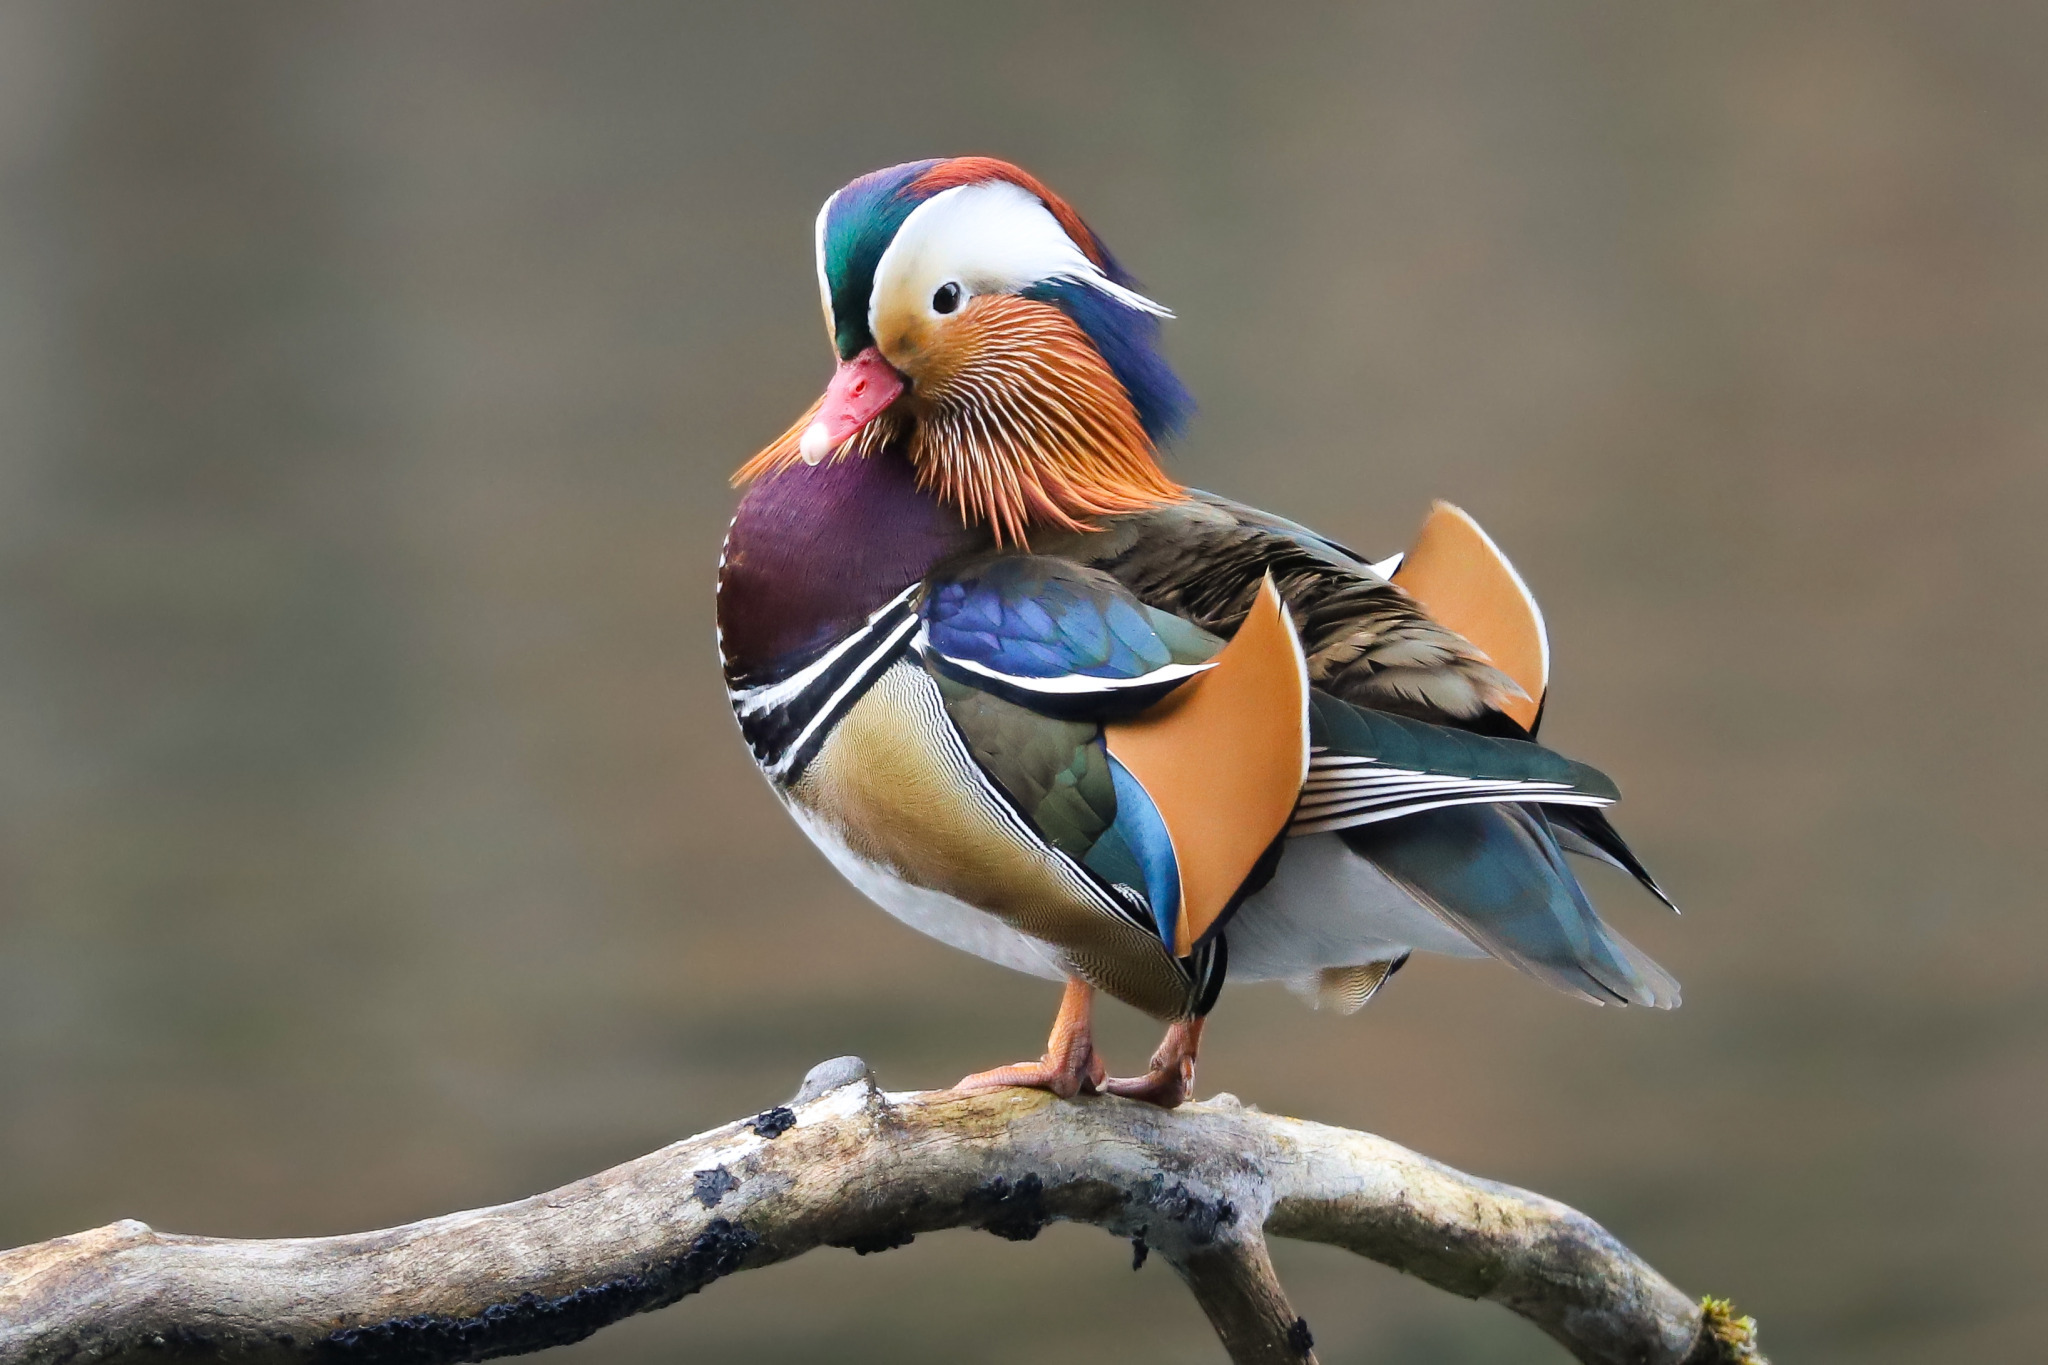 Природа Птичка Мандаринка во всей красе. Пестрая, разноцветная с хохолком. Как Вам такая красавица?